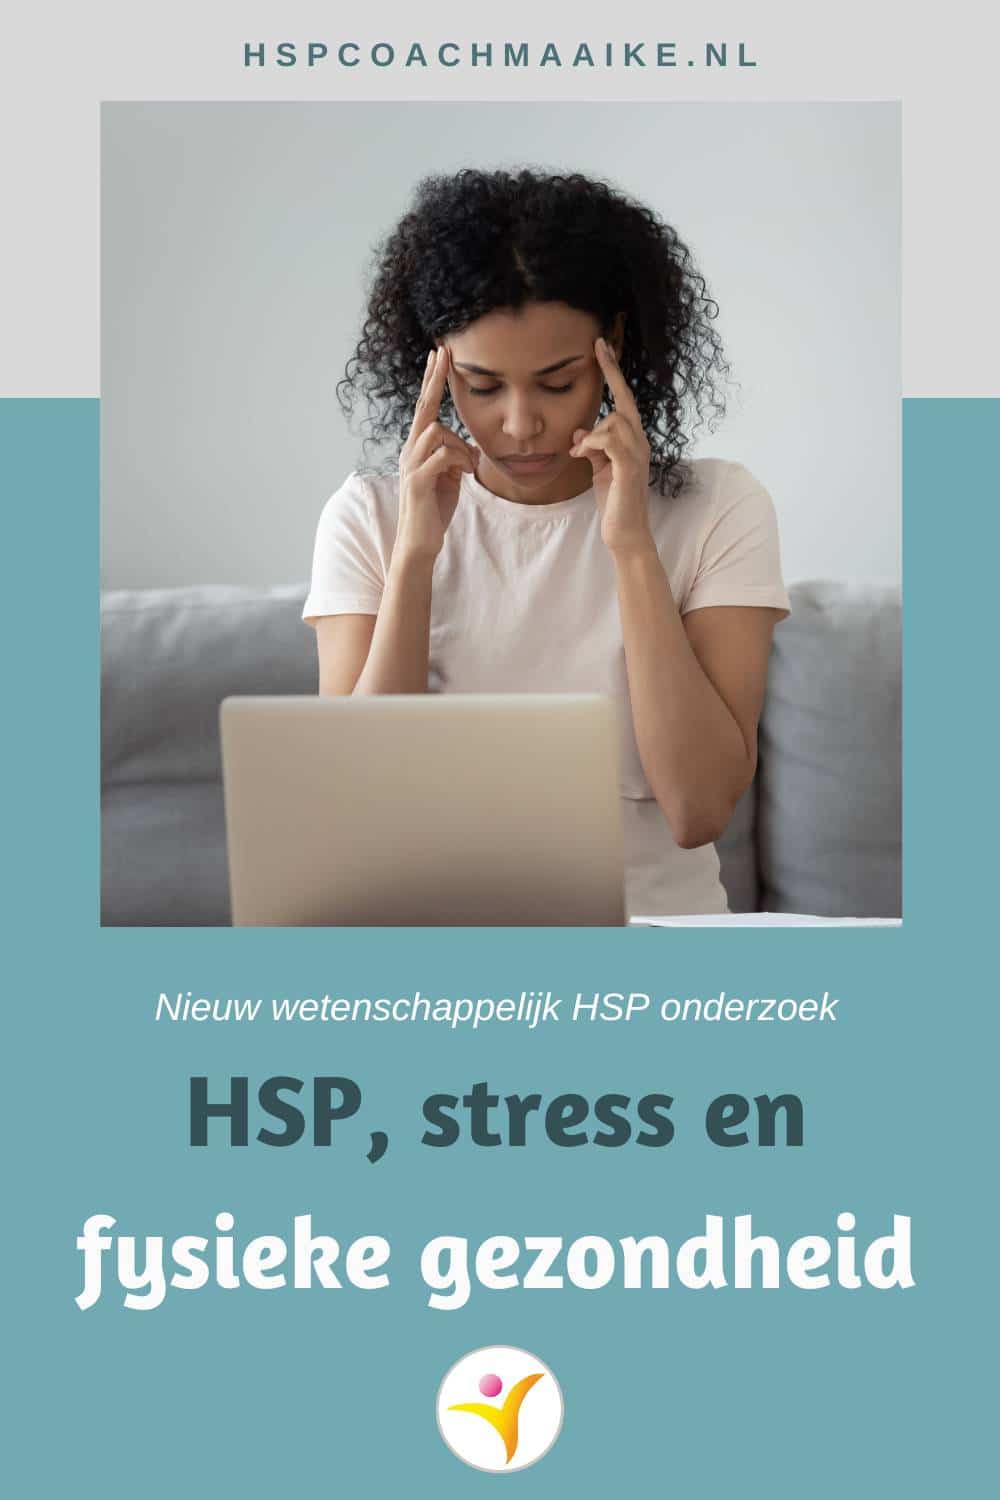 de relatie tussen stress en fysieke gezondheid als HSP